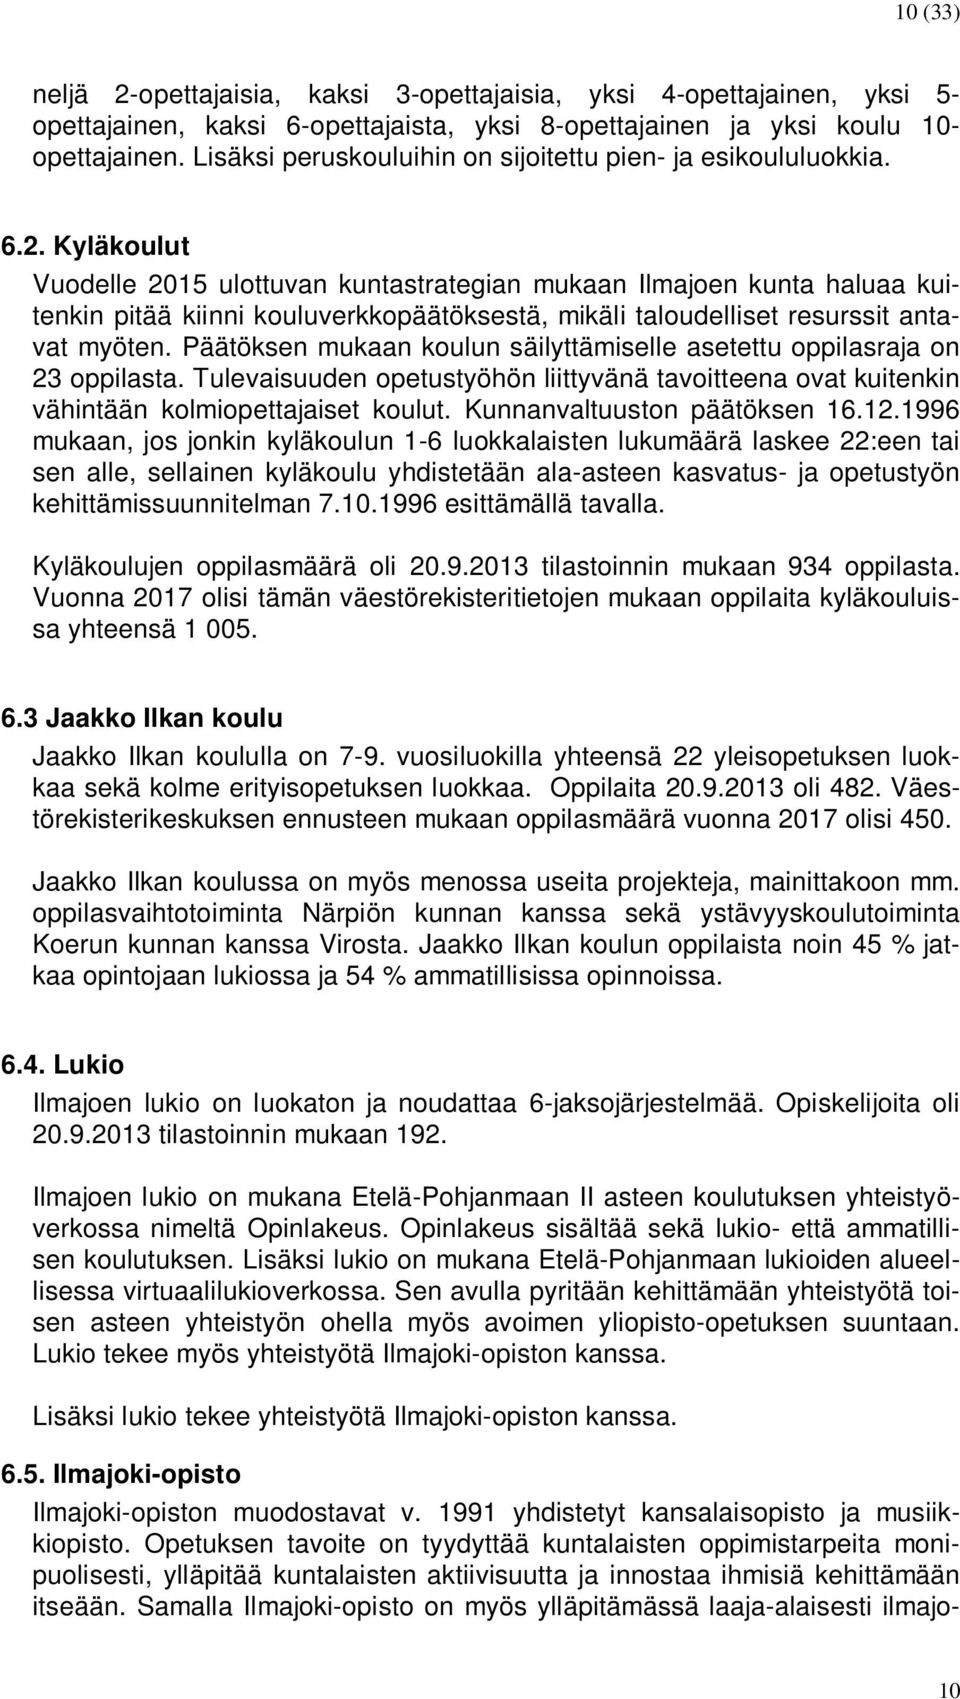 Kyläkoulut Vuodelle 2015 ulottuvan kuntastrategian mukaan Ilmajoen kunta haluaa kuitenkin pitää kiinni kouluverkkopäätöksestä, mikäli taloudelliset resurssit antavat myöten.